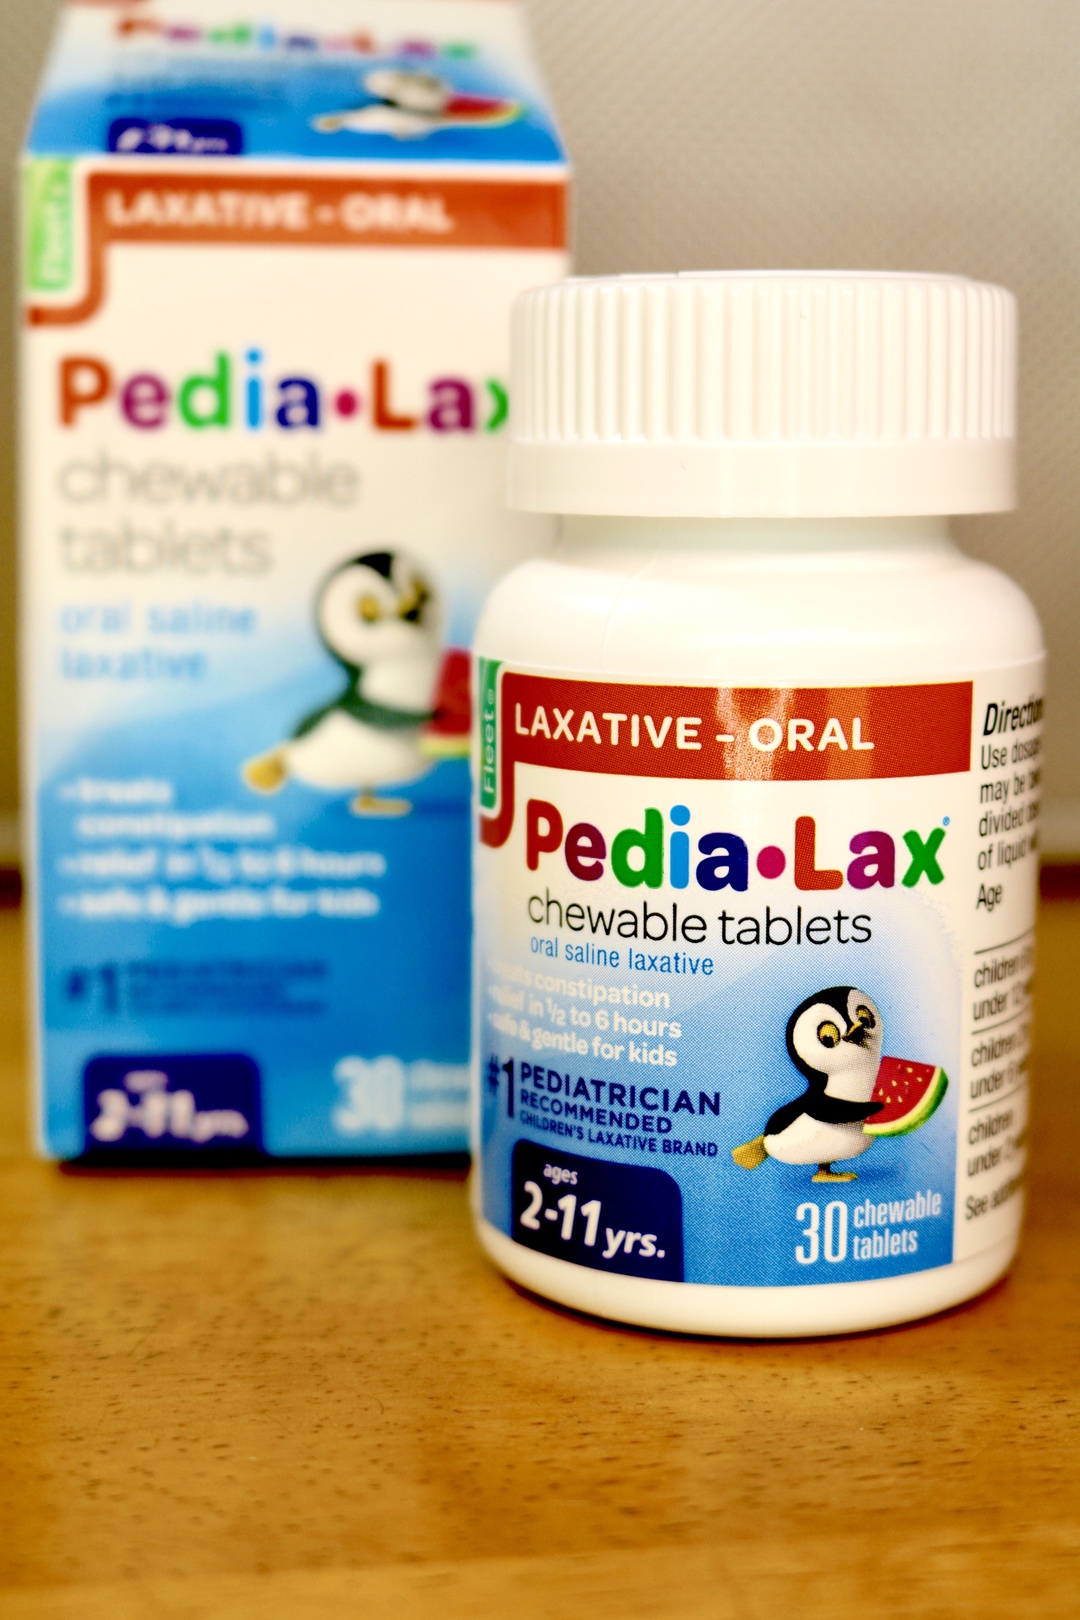 Pedia-Lax #PediaLax #medicine #kids #health #giveaway #ad